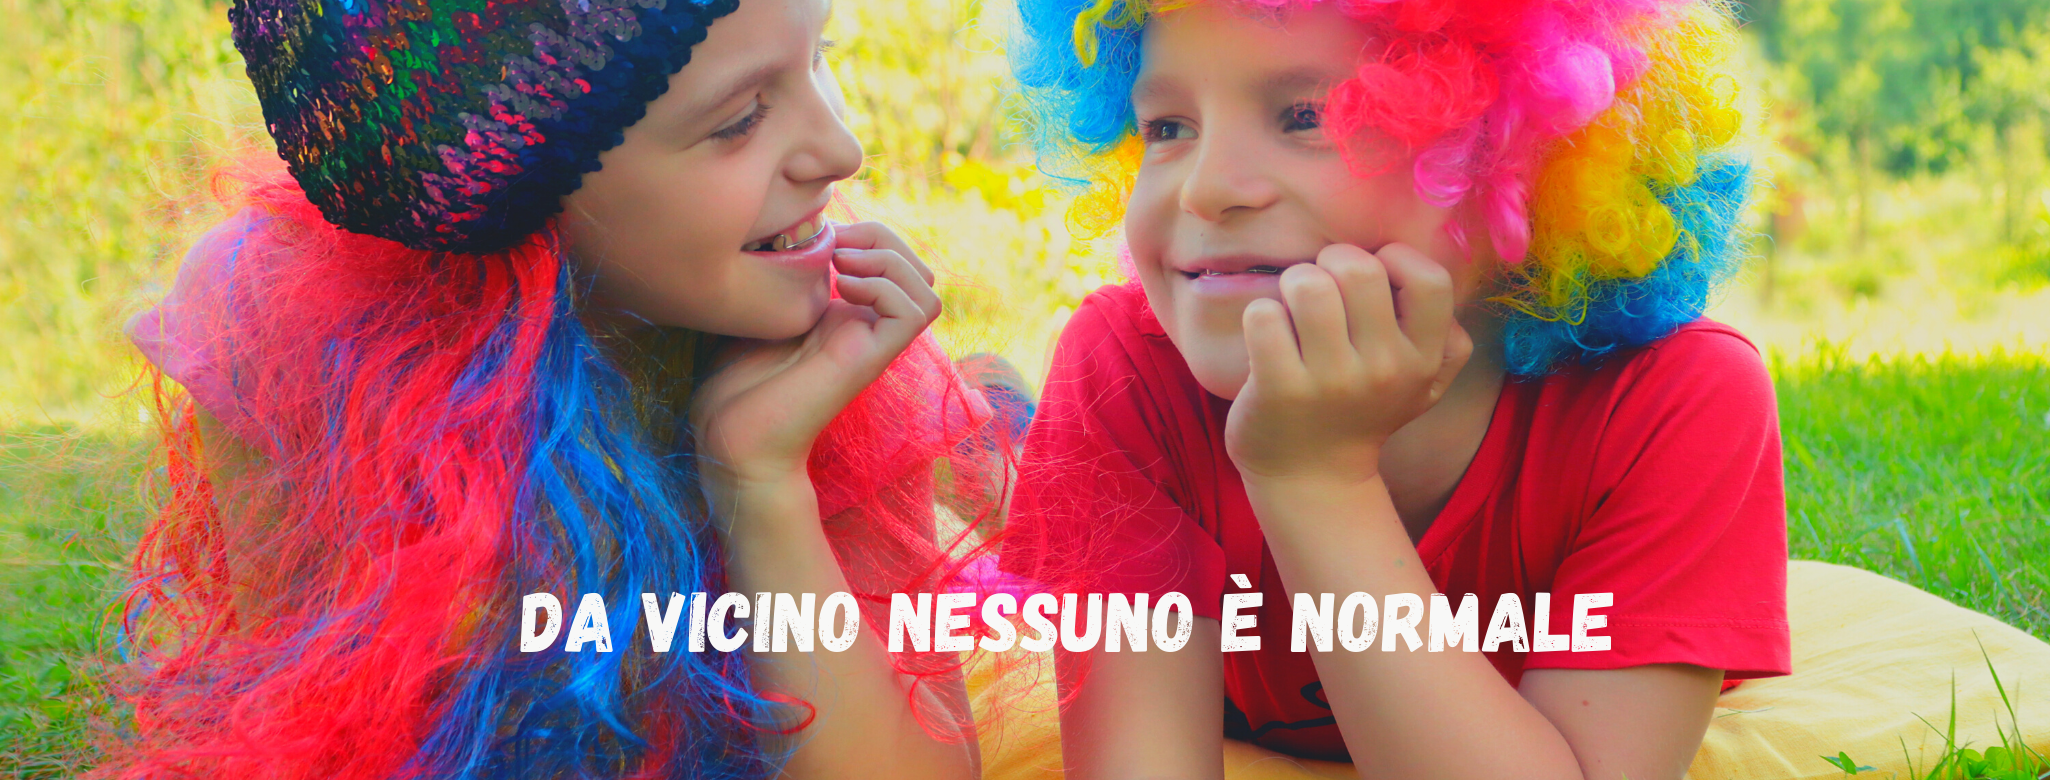 Immagine di bambino e bambina con parrucche con colori sgargianti, si guardano sorridendo: scritta "da vicino nessuno è normale"